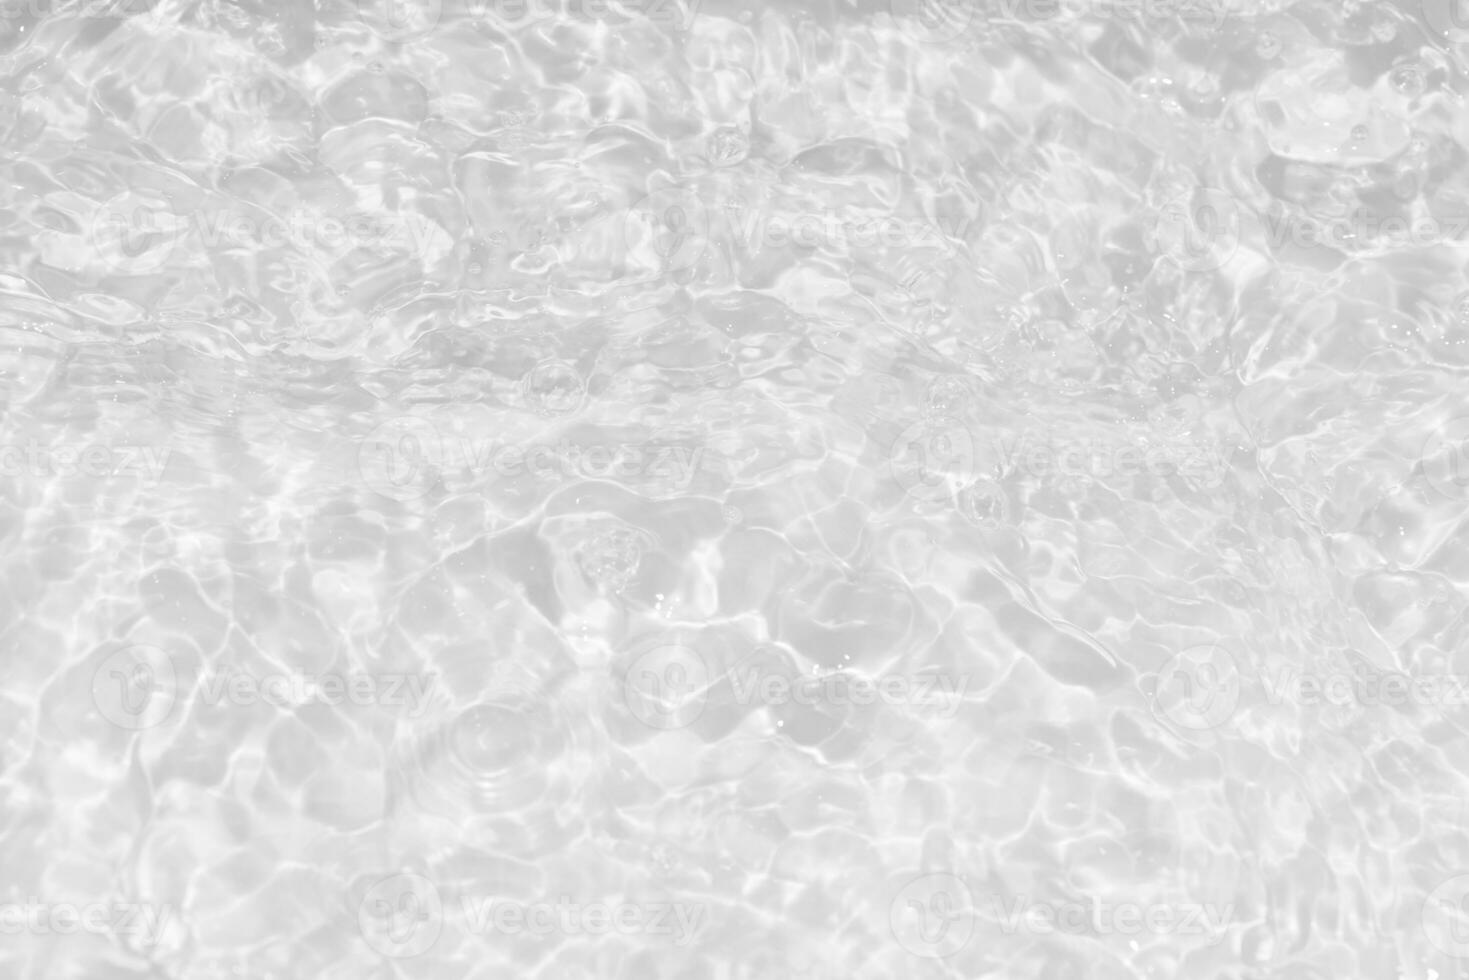 branco água com ondulações em a superfície. desfocar borrado transparente branco colori Claro calma água superfície textura com salpicos e bolhas. água ondas com brilhando padronizar textura fundo. foto